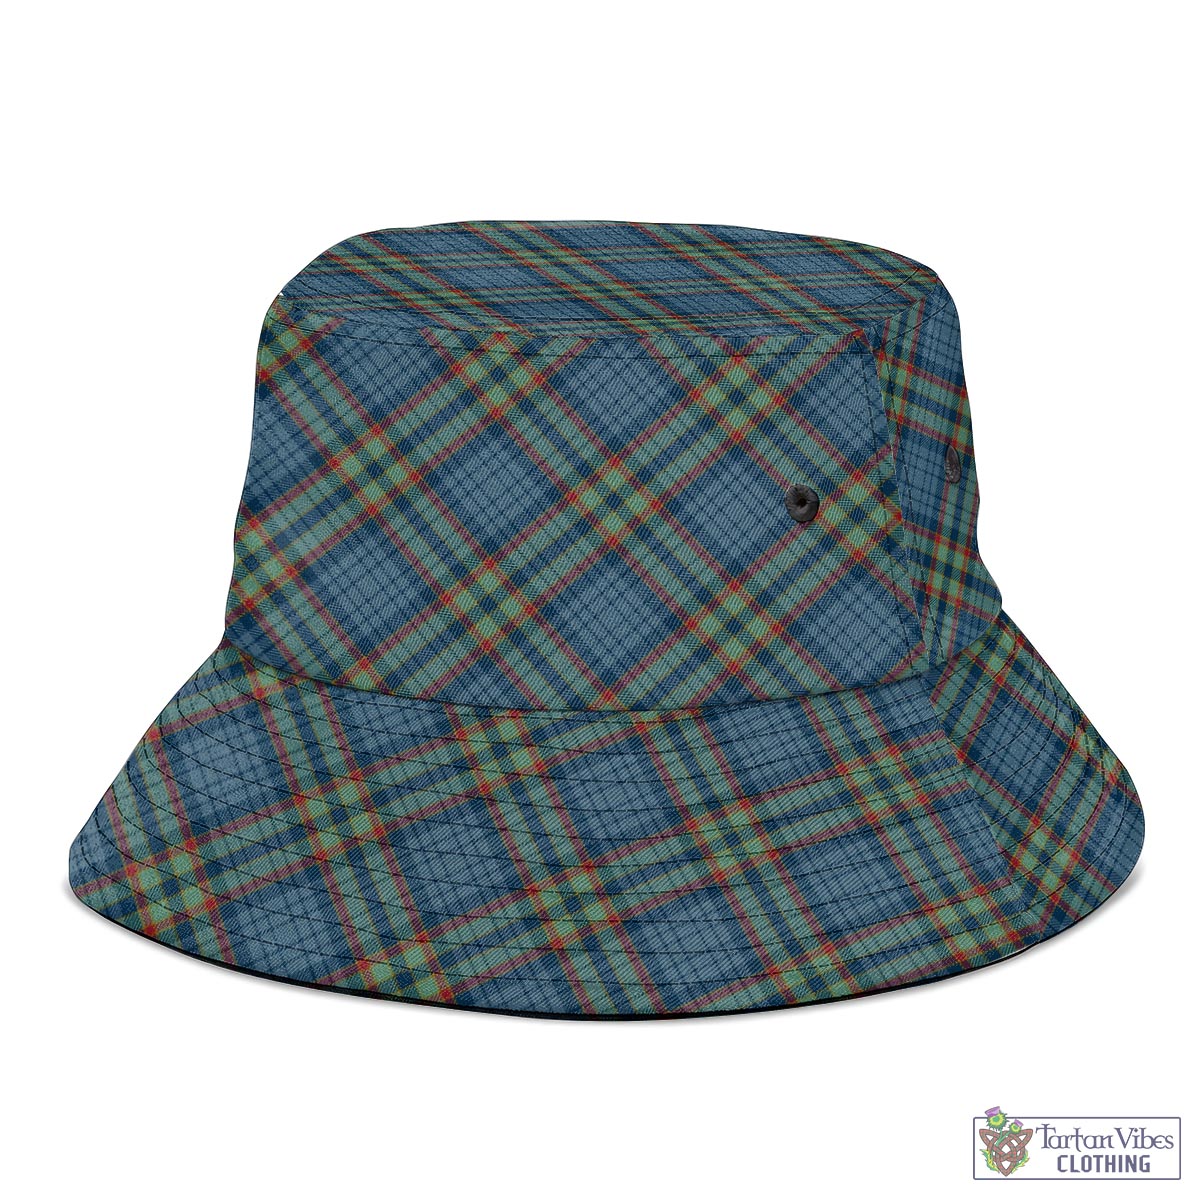 Tartan Vibes Clothing Ralston UK Tartan Bucket Hat